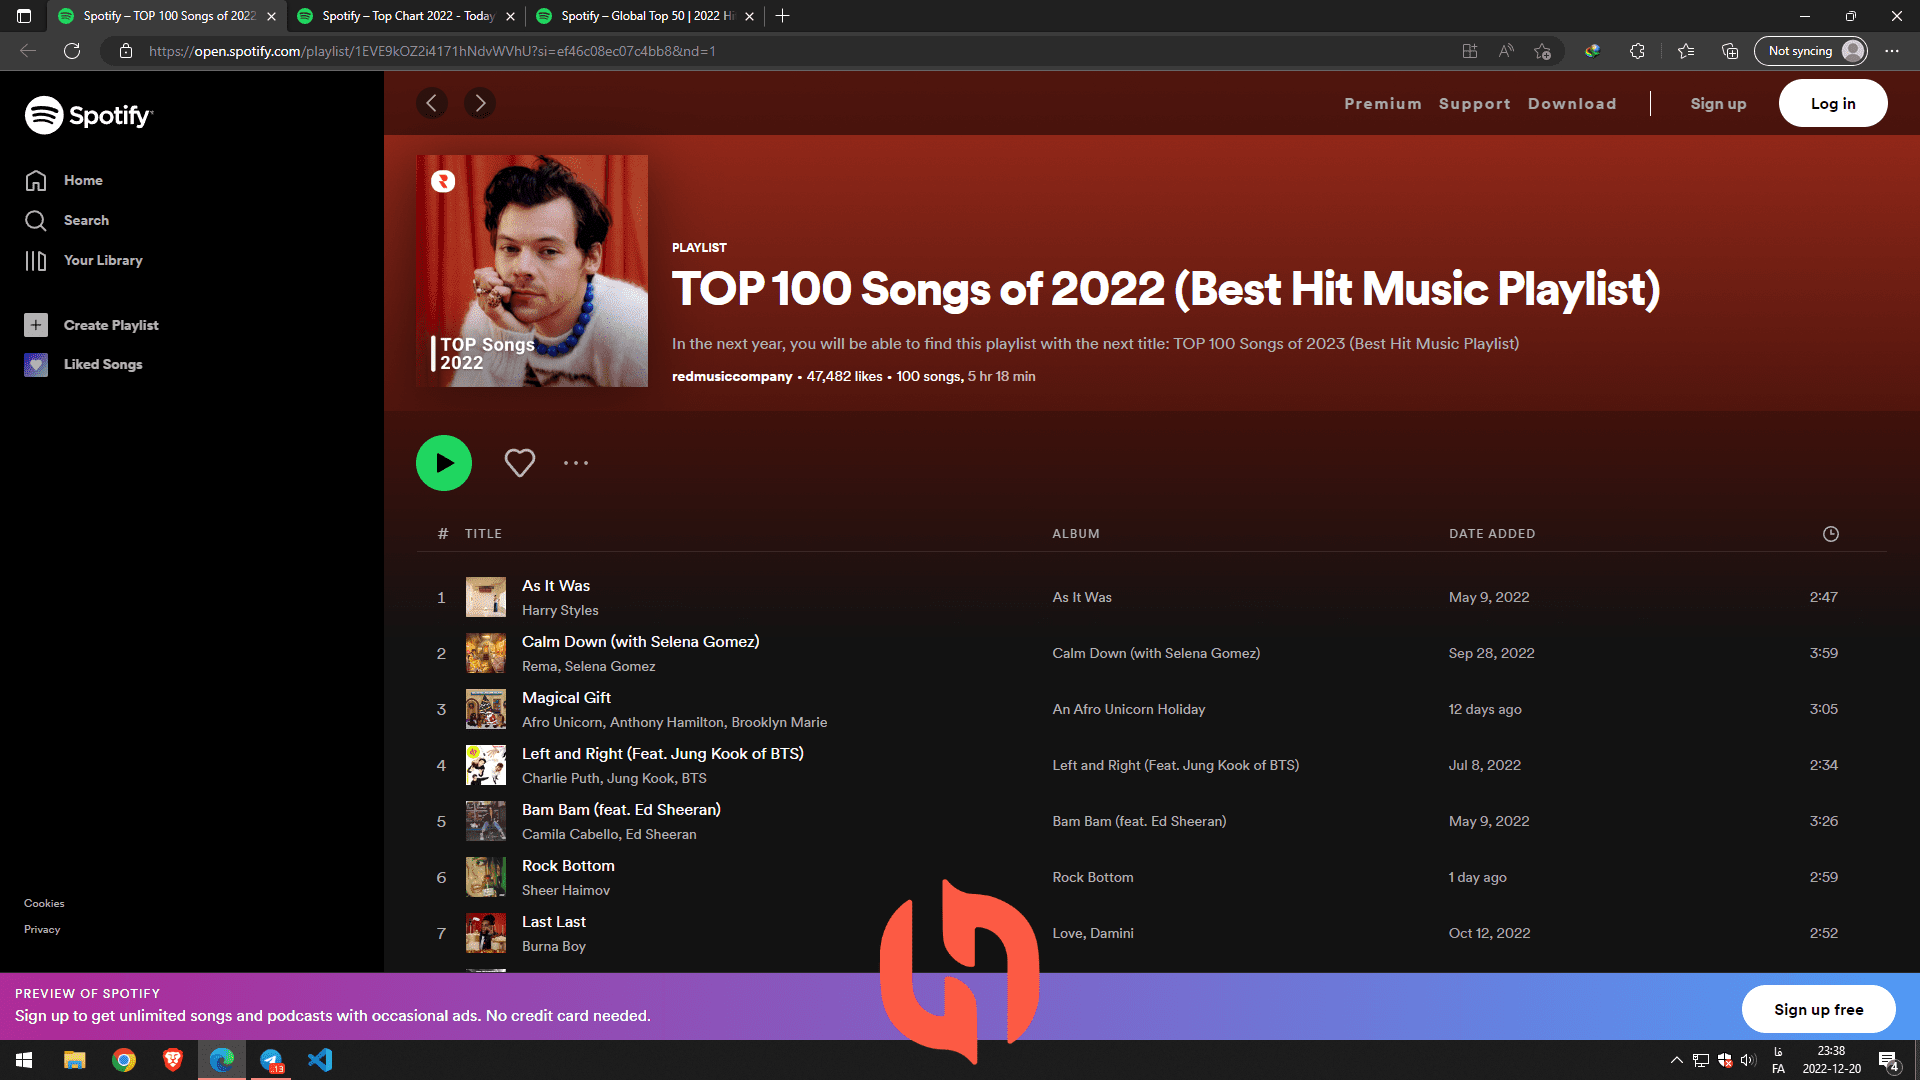 پلی لیست TOP 100 Songs of 2022 (Best Hit Music Playlist) به همراه آهنگ ها